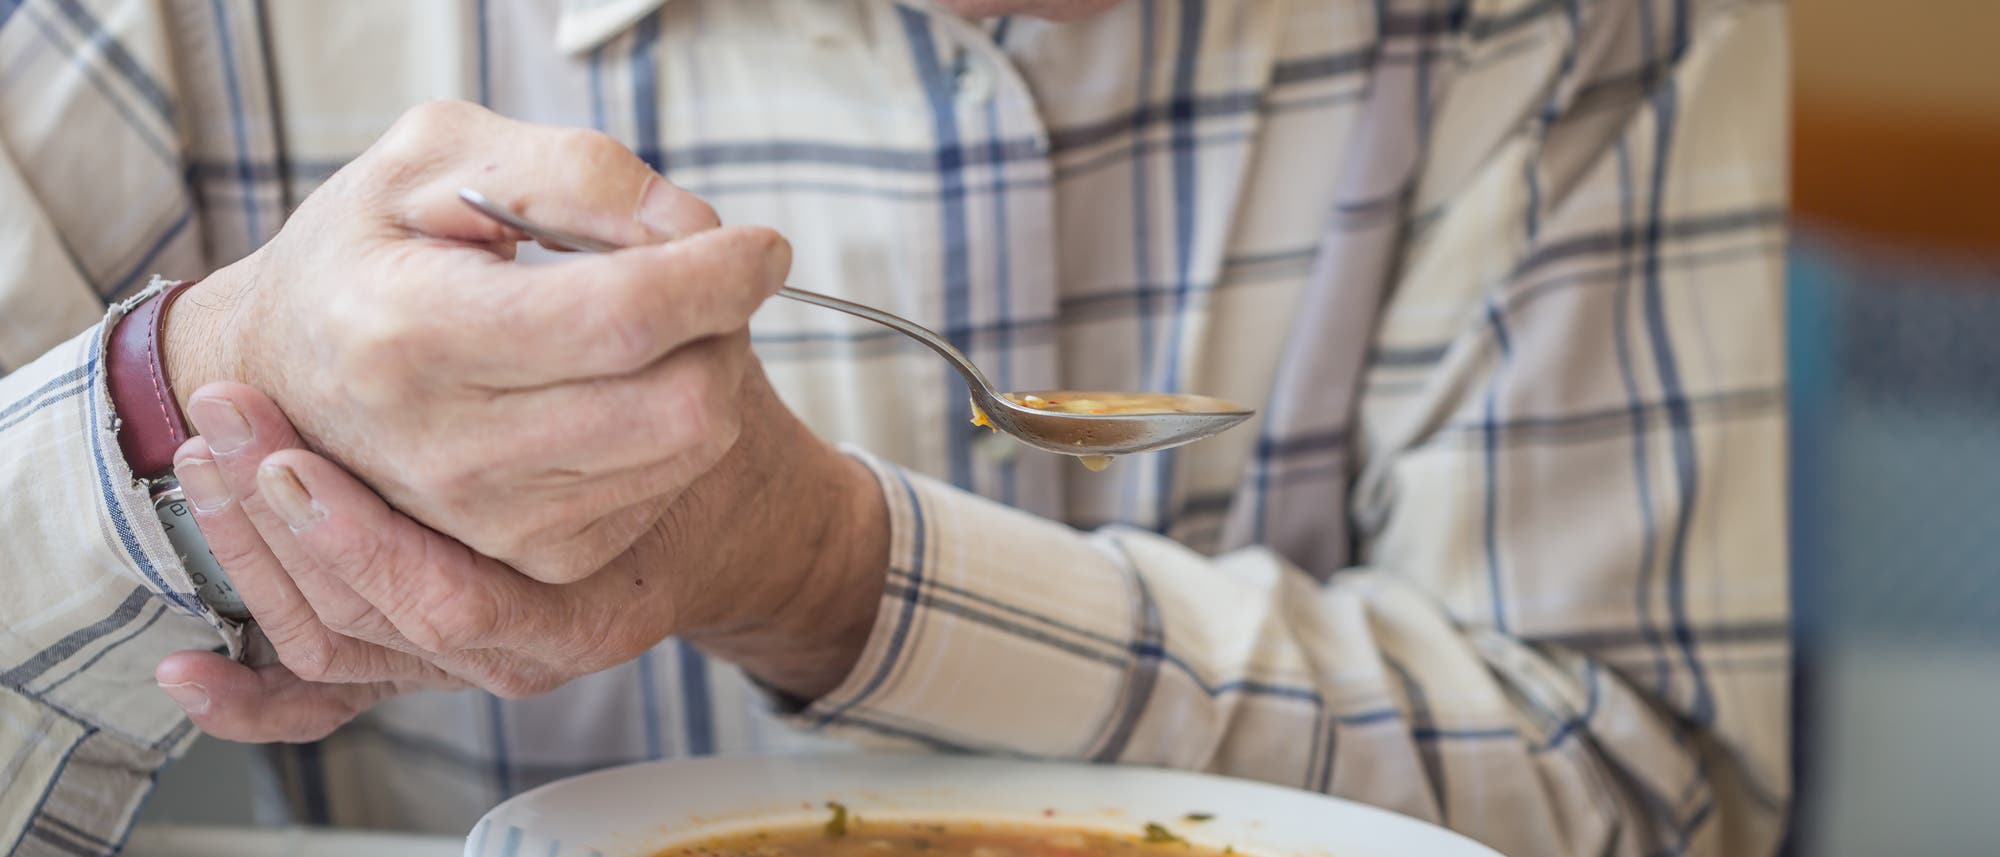 Alter Mann stützt seine Hand um seine Suppe auslöffeln zu können.